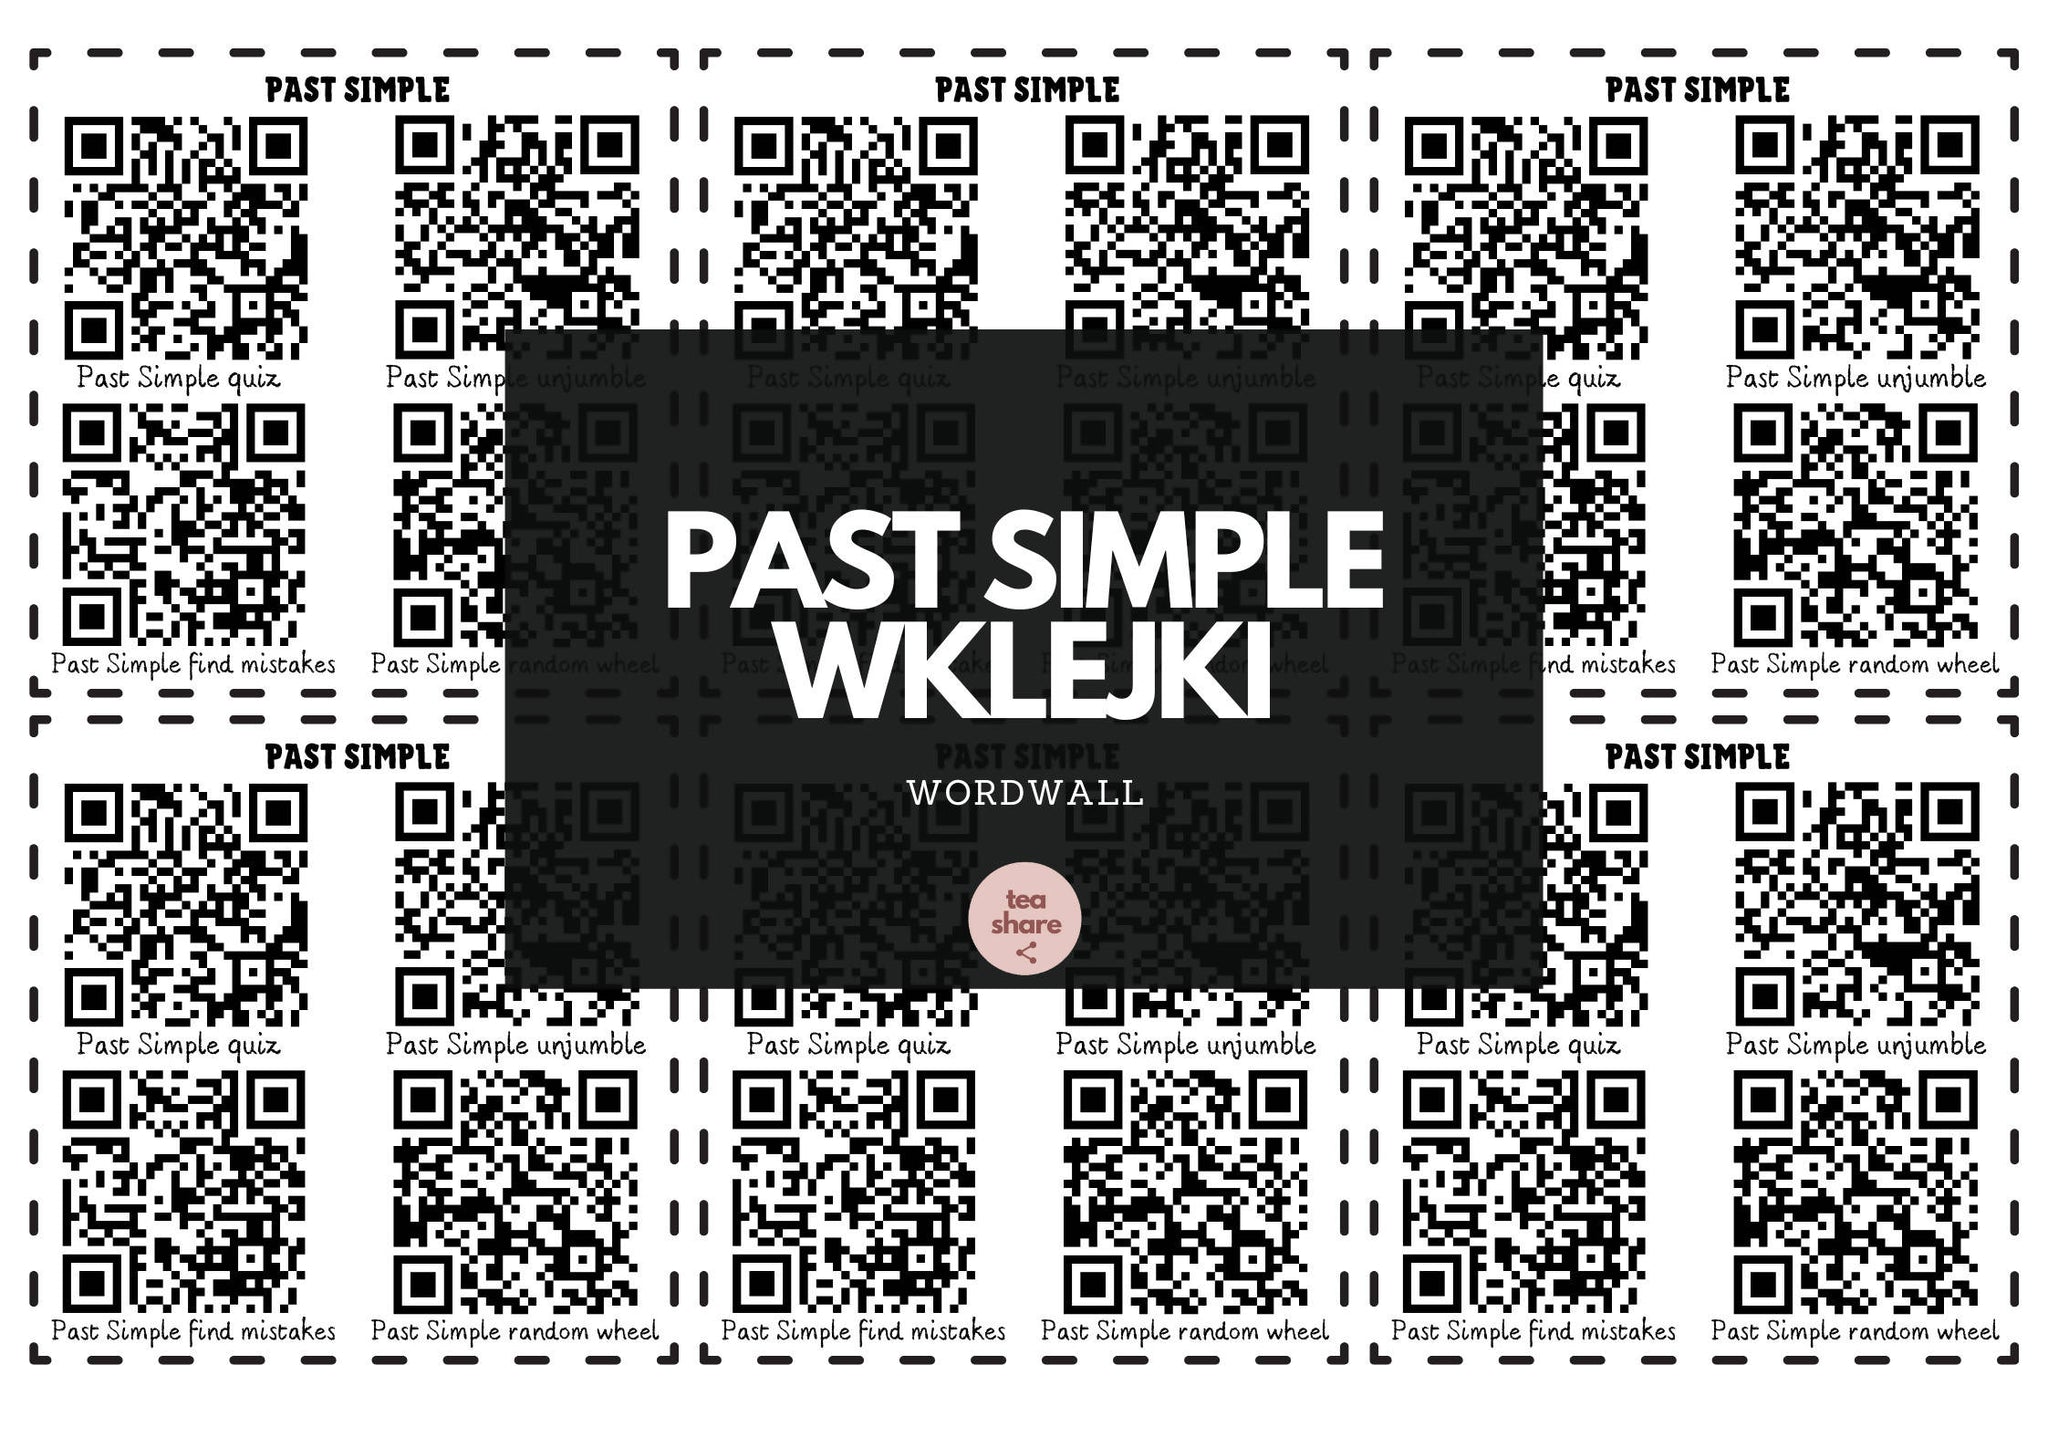 Past Simple - wklejki wordwall